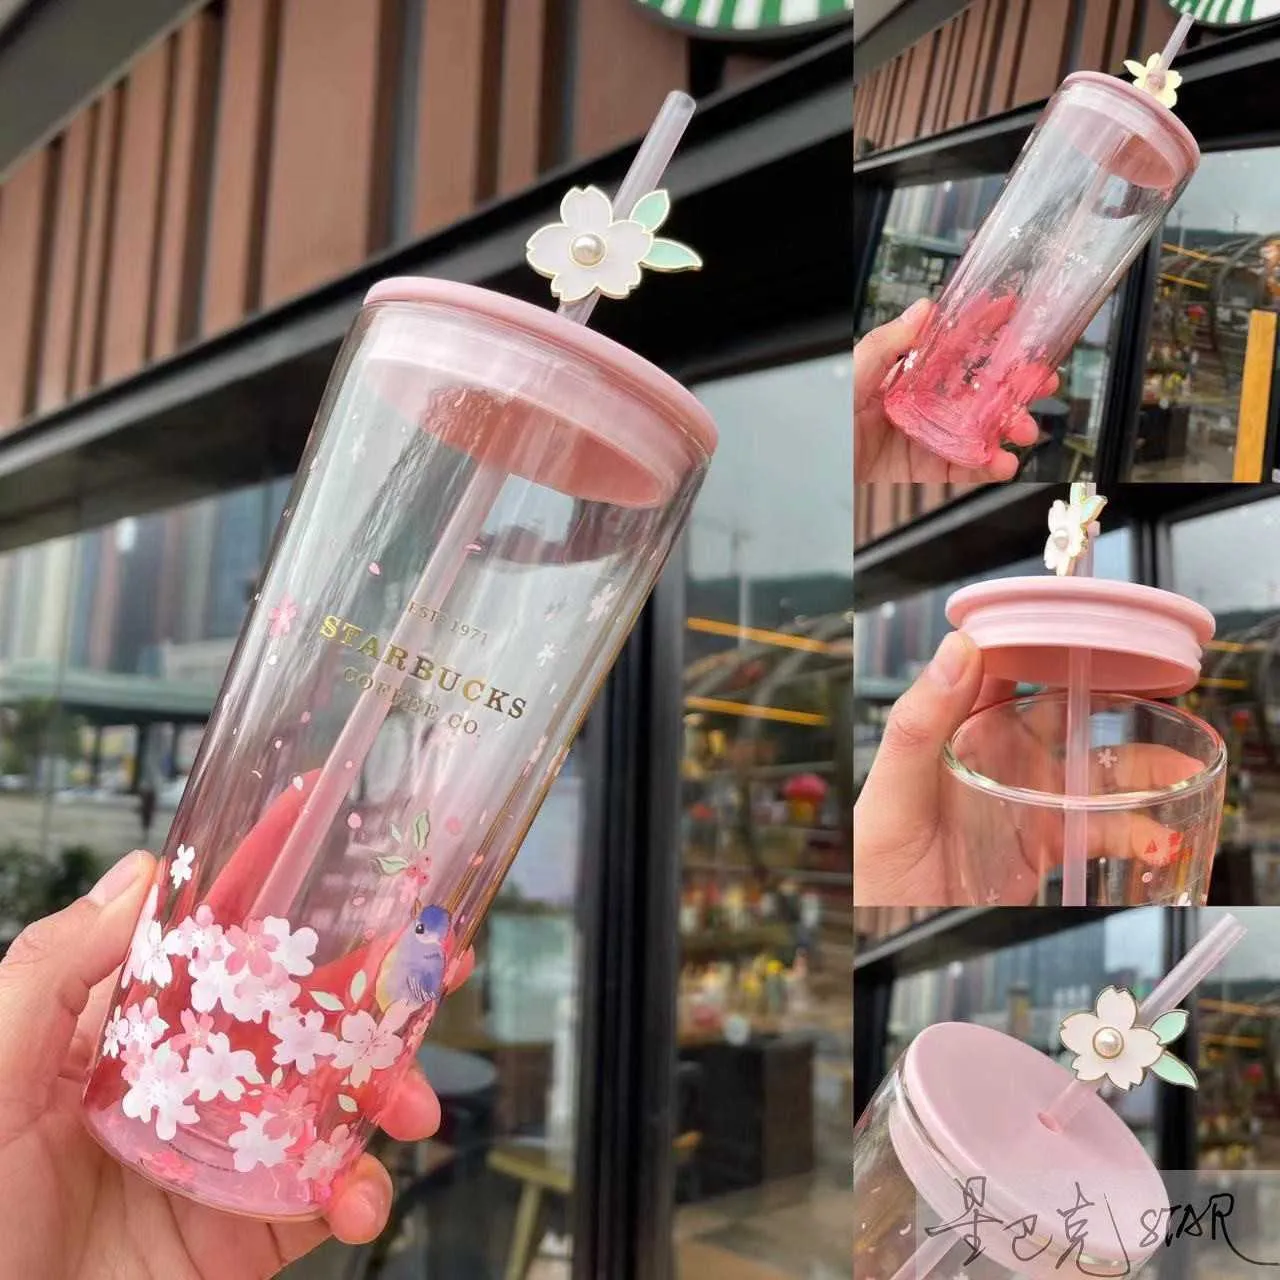 スターバックス新しいカップピンク591mlの鳥の歌の花の香り二重層ガラス大容量コーヒー飲料カップ